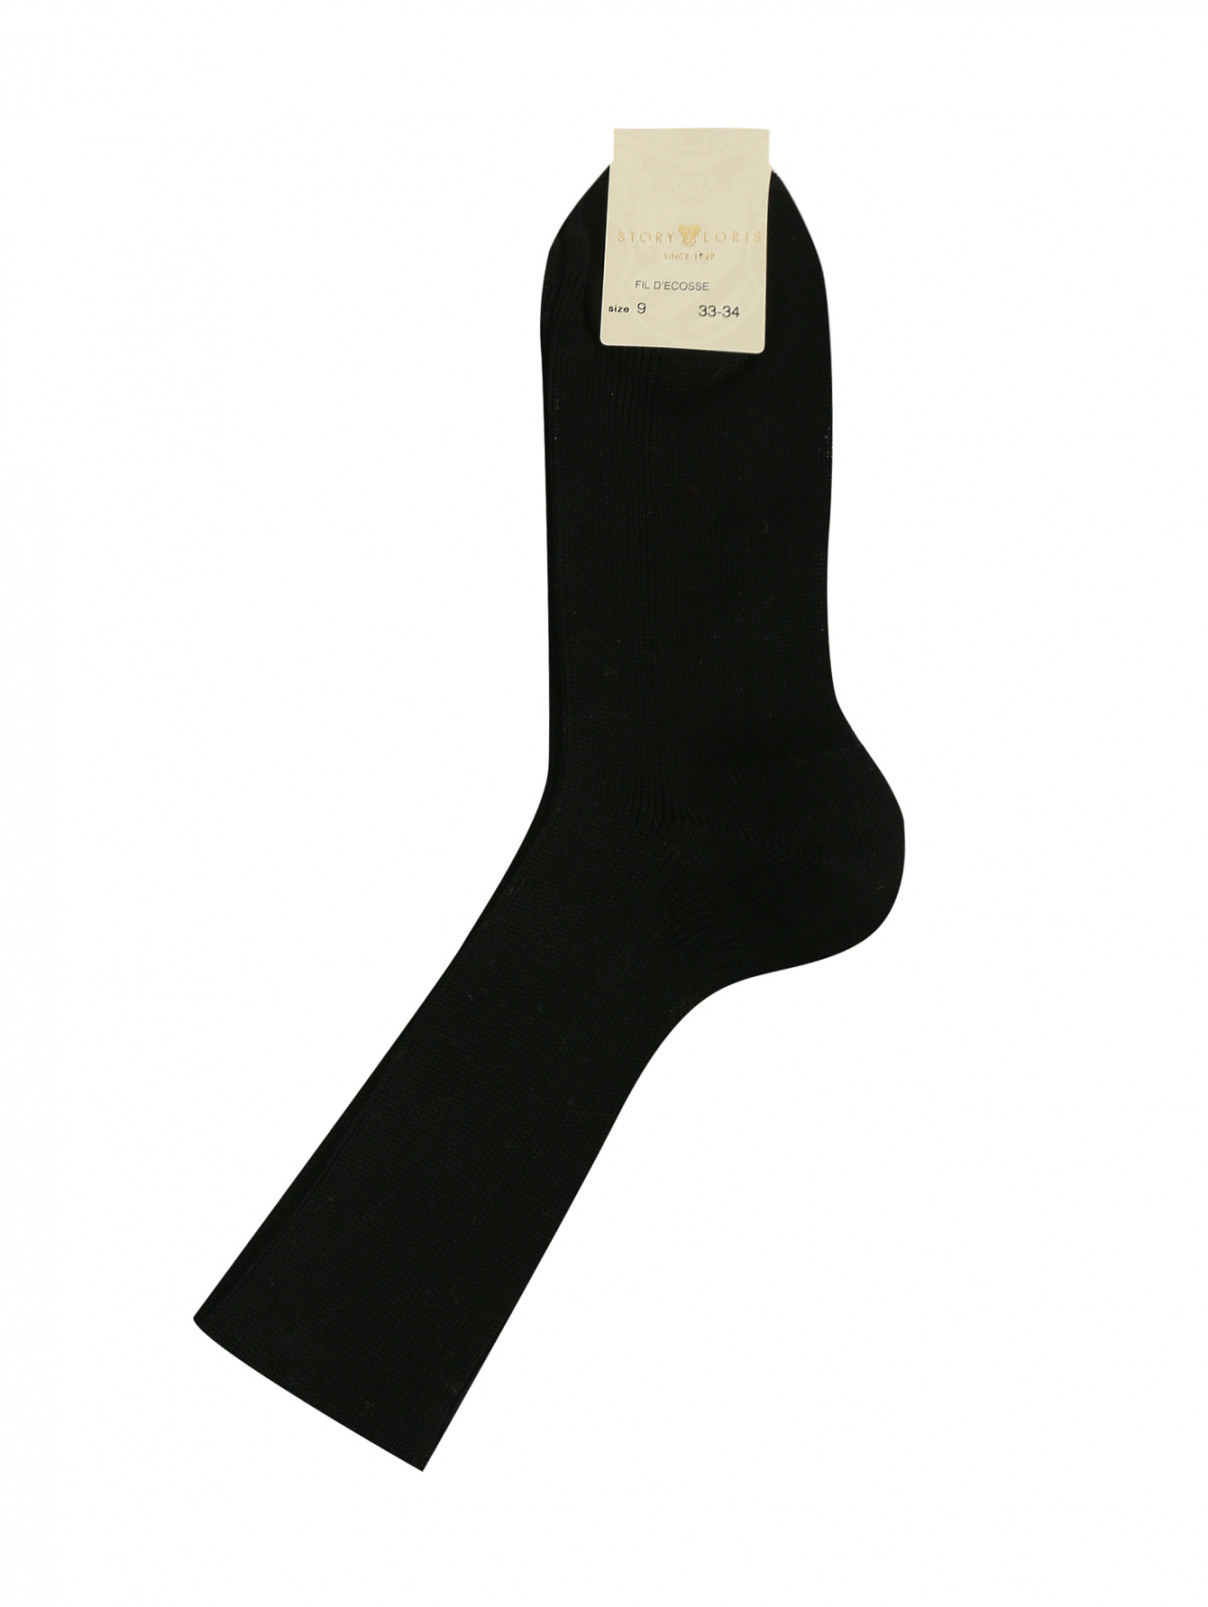 Набор носков из хлопка Story Loris  –  Общий вид  – Цвет:  Черный